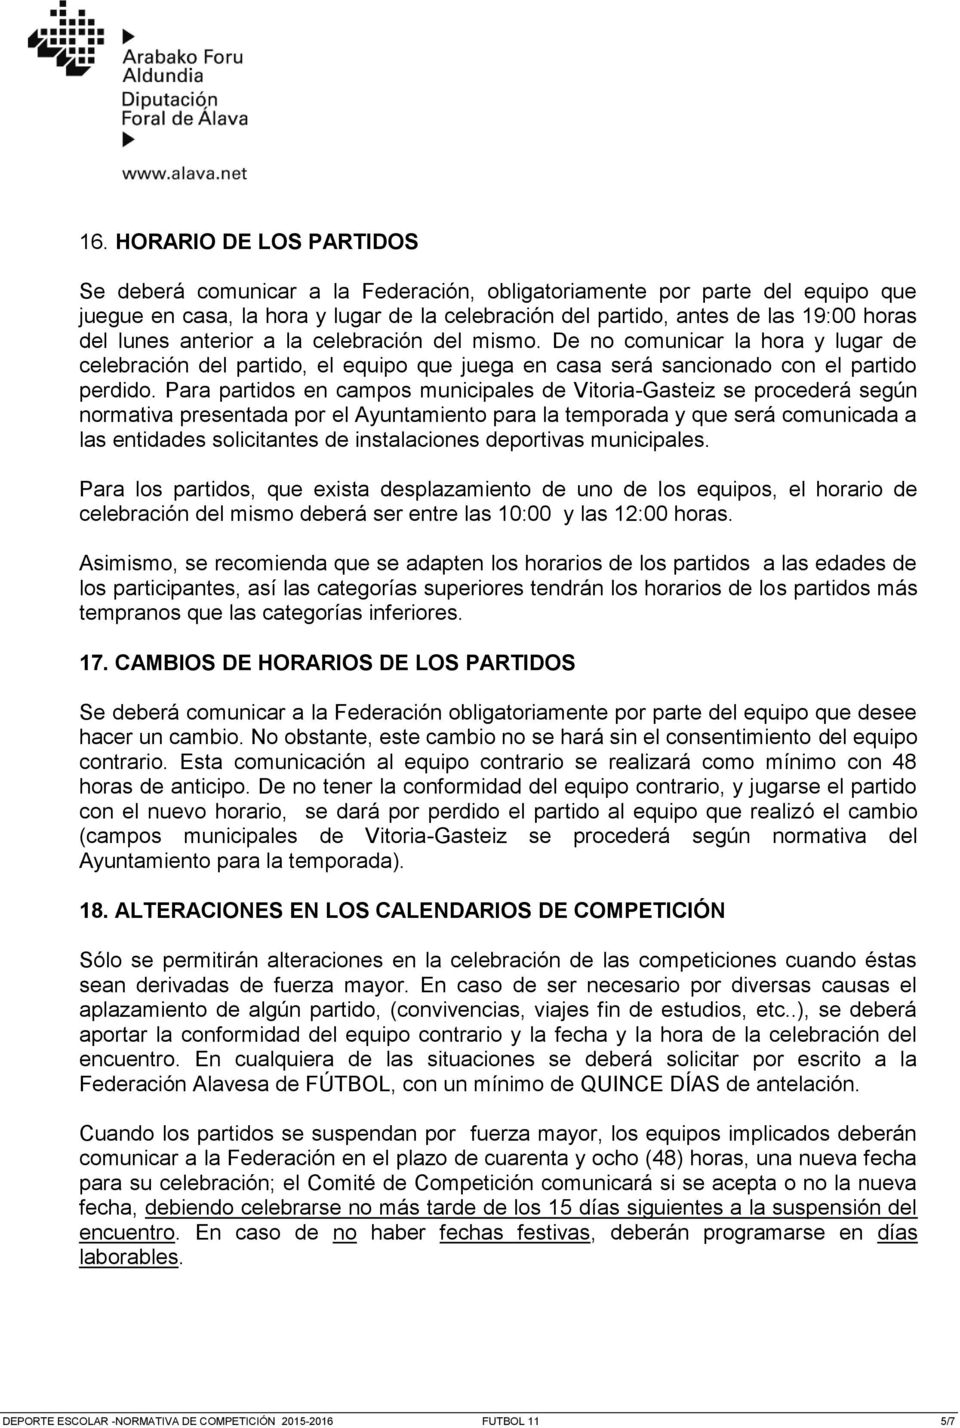 Para partidos en campos municipales de Vitoria-Gasteiz se procederá según normativa presentada por el Ayuntamiento para la temporada y que será comunicada a las entidades solicitantes de